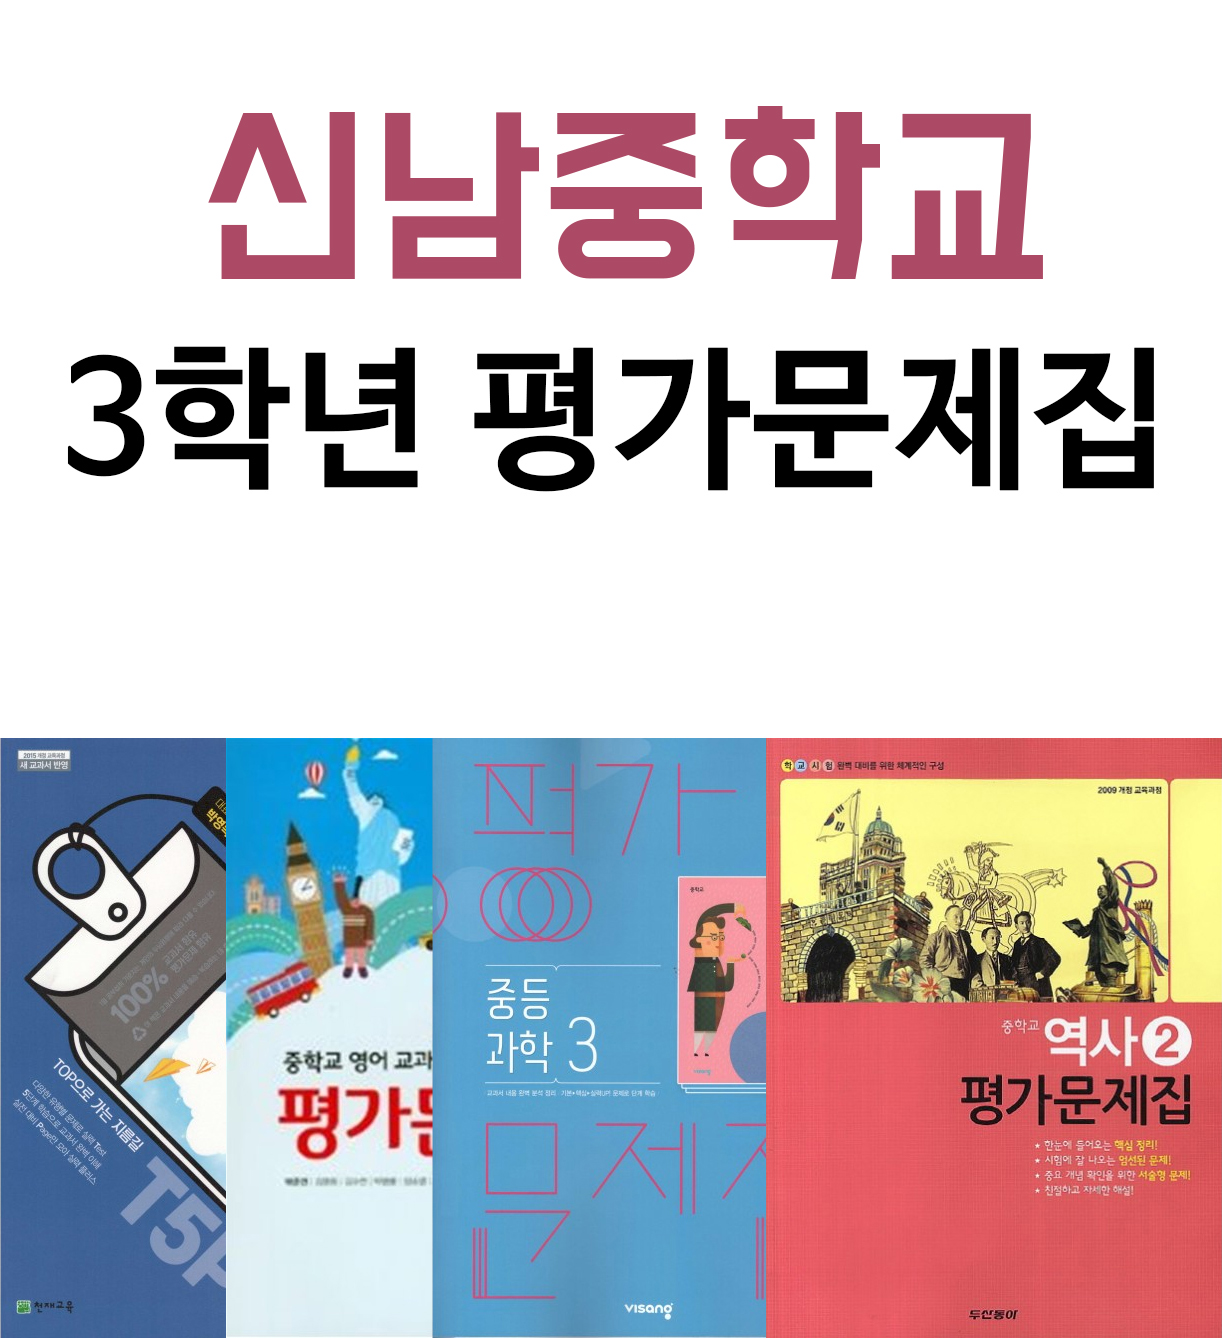 신남중학교 3학년 평가문제집 국어, 영어, 과학, 사회, 역사, 기술가정(23)